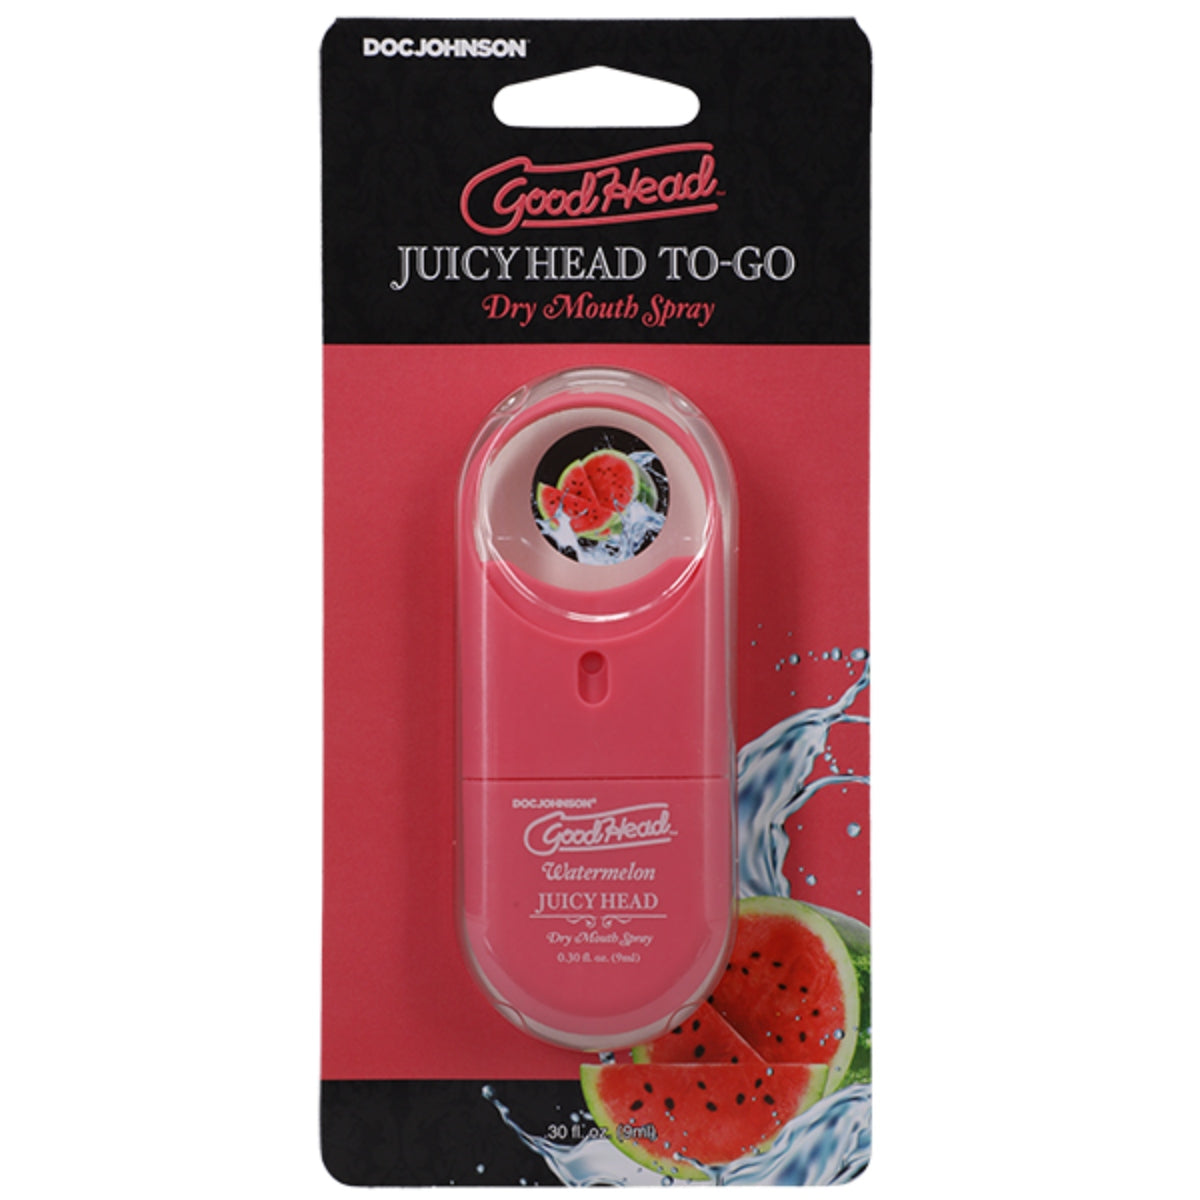 Flavoured Dry Mouth Spray Goodhead | Juicy Head Dry Mouth Spray To-Go Watermelon - 0.30 fl oz    | Awaken My Sexuality